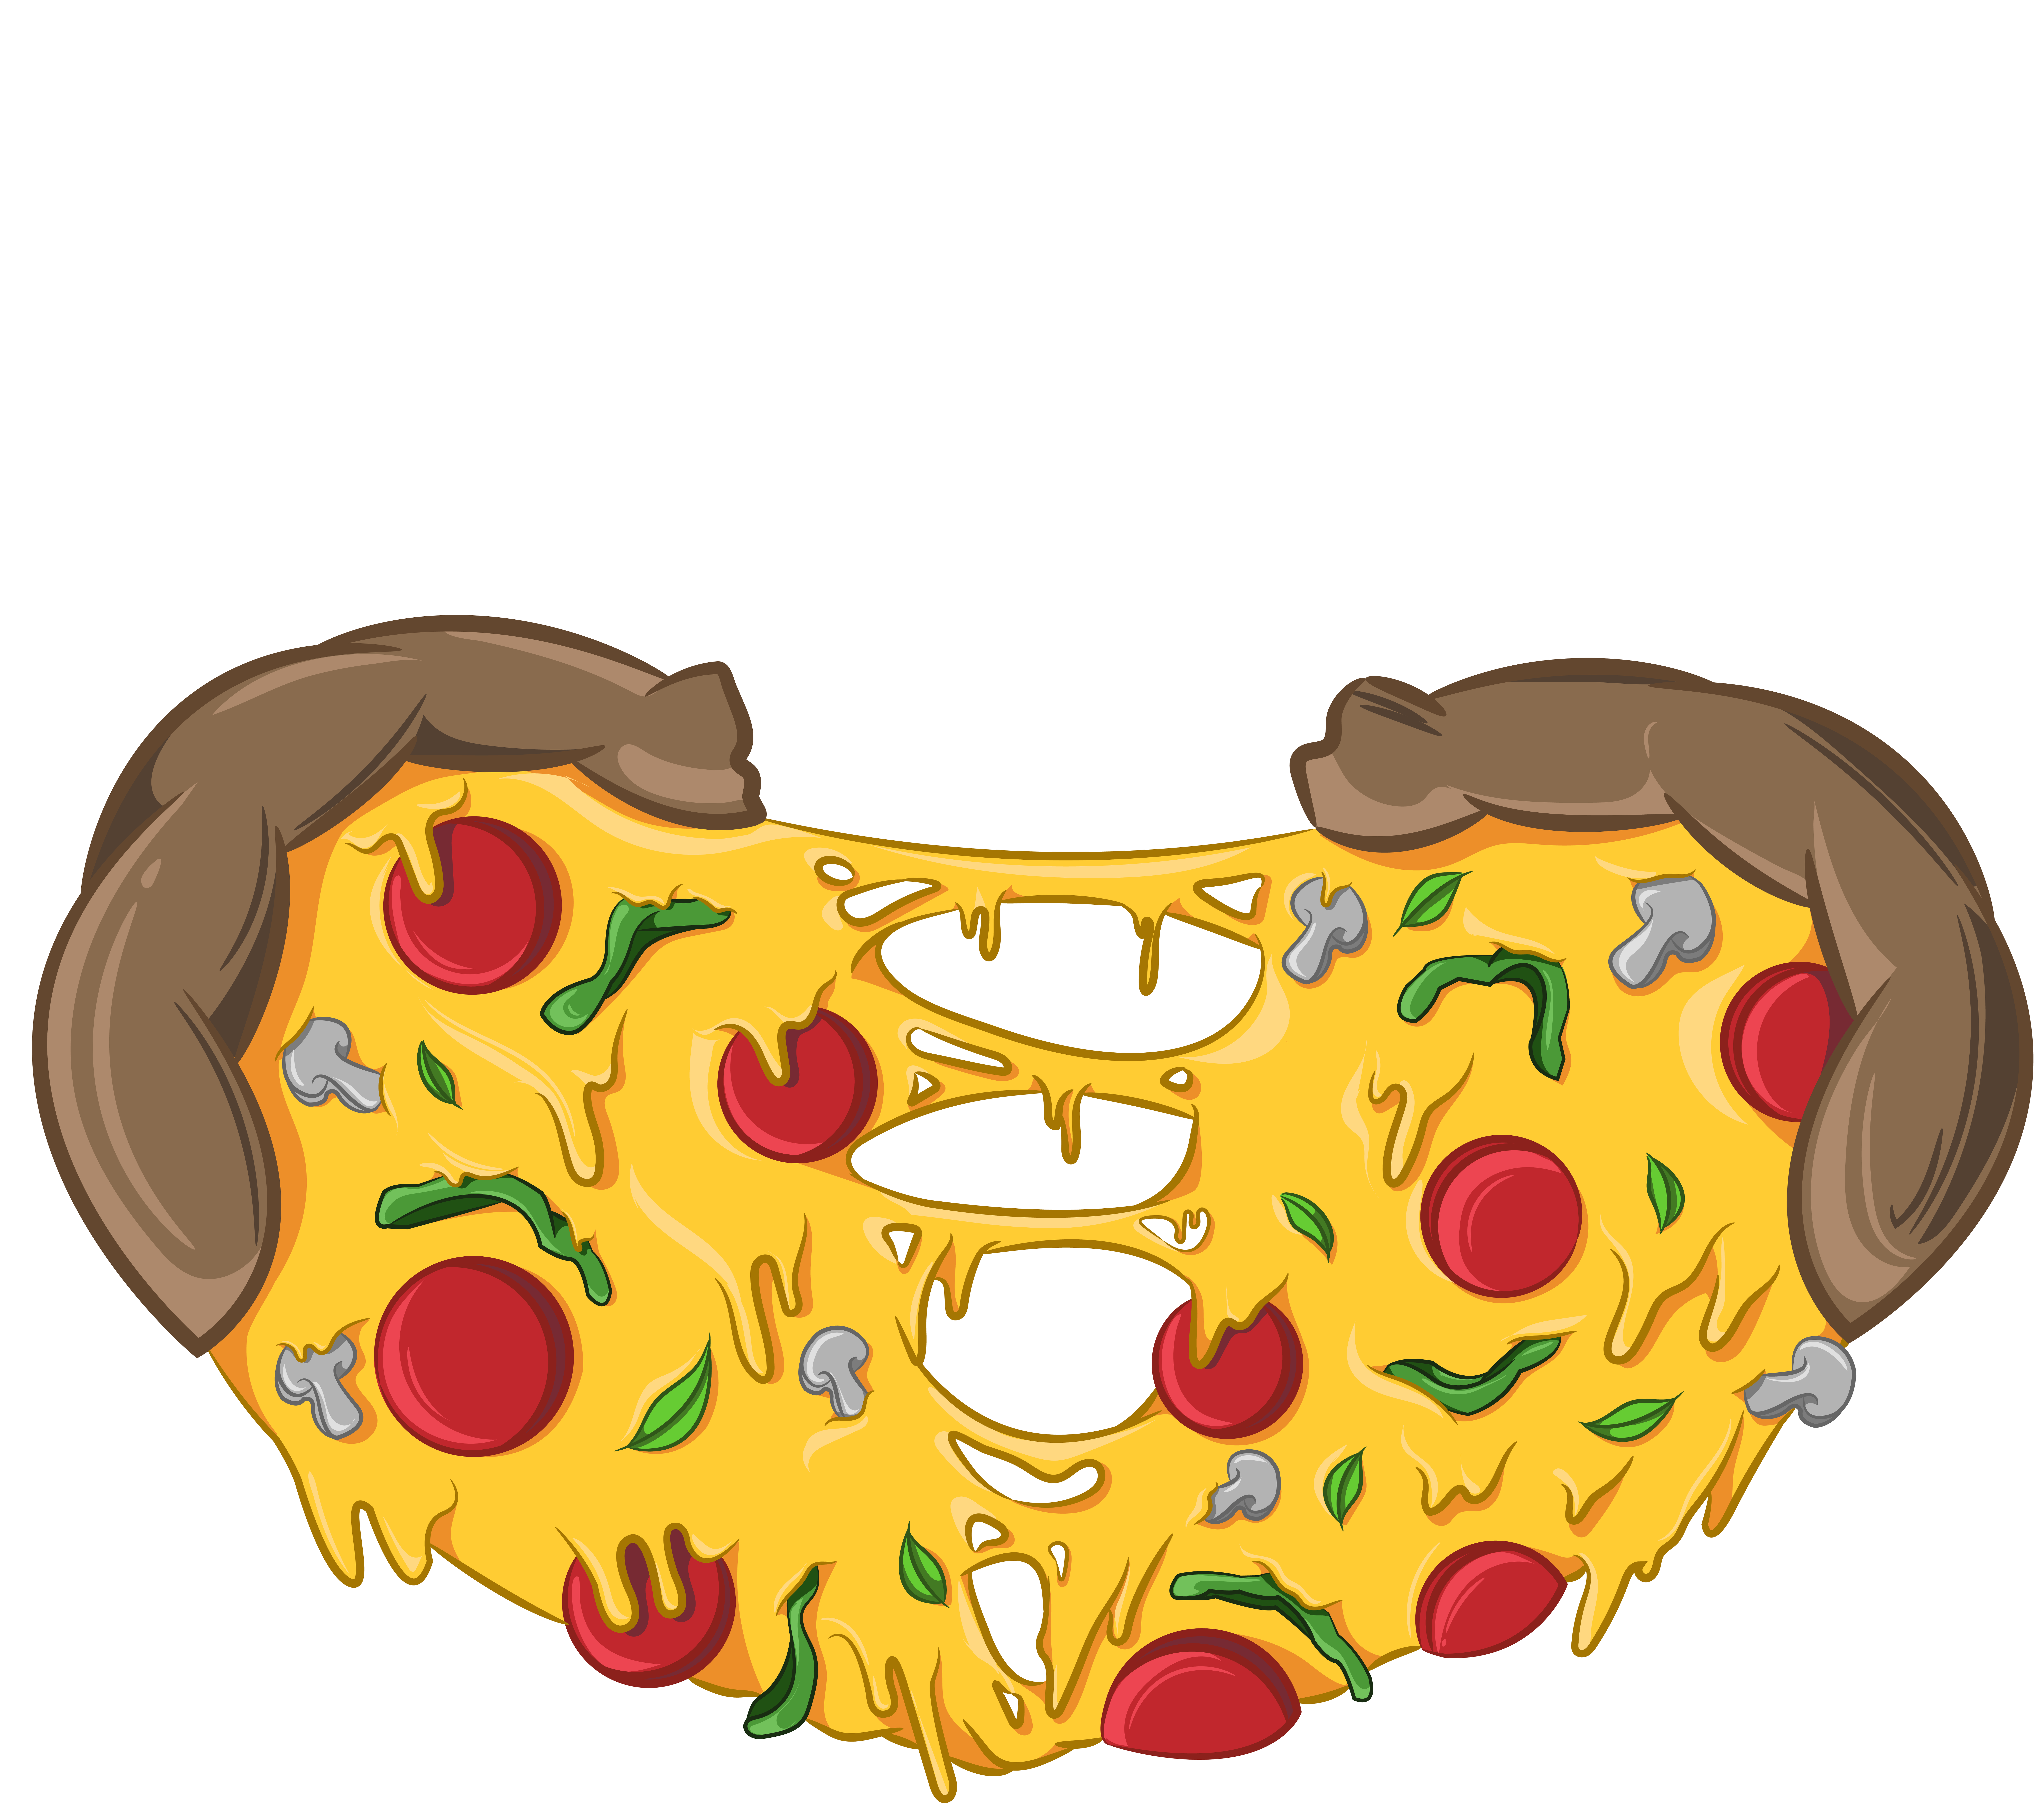 love pizza